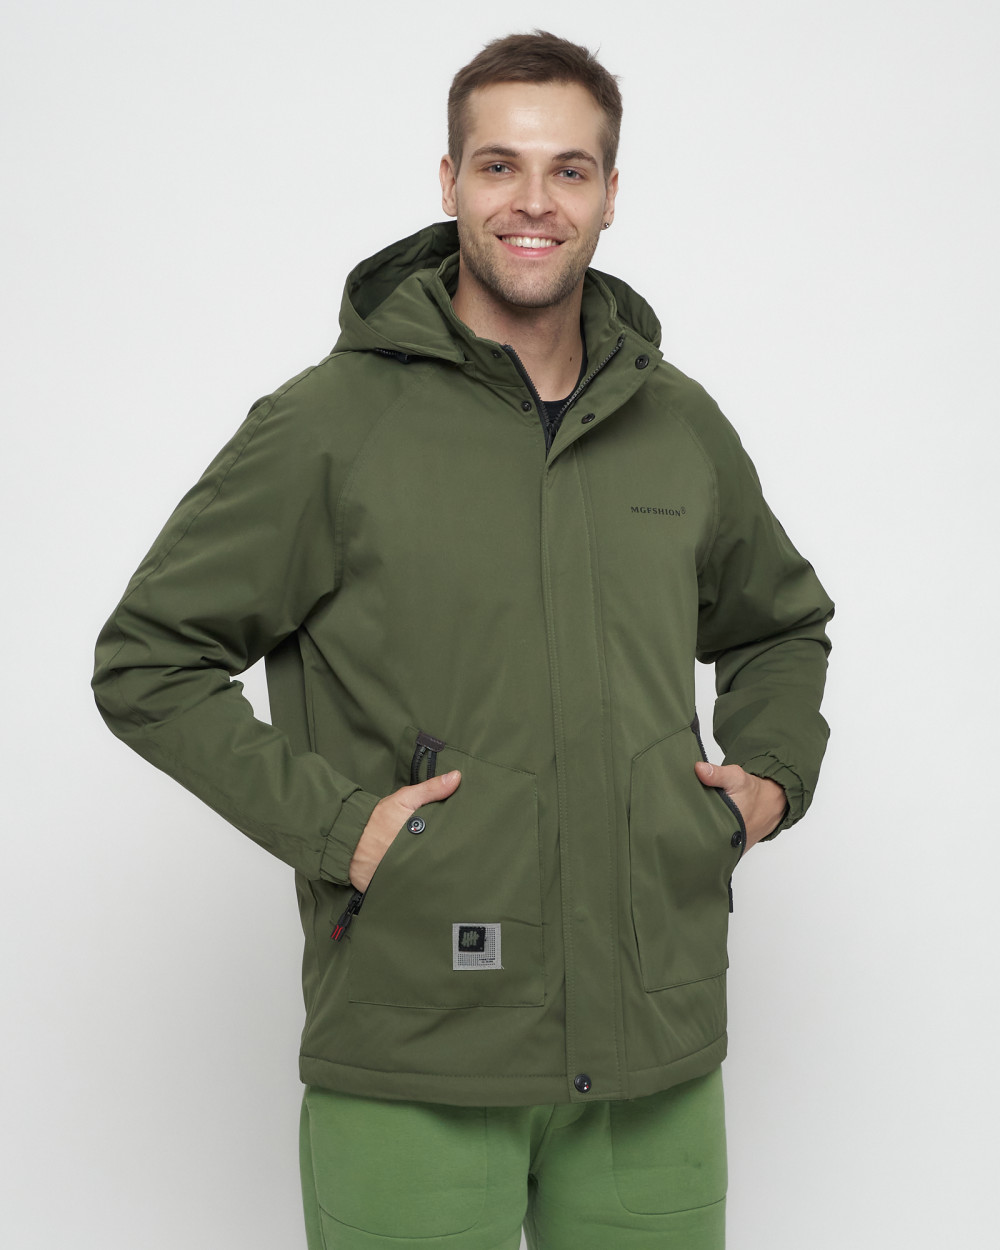 Купить куртку мужскую спортивную весеннюю оптом от производителя недорого в Москве 8598Kh 1